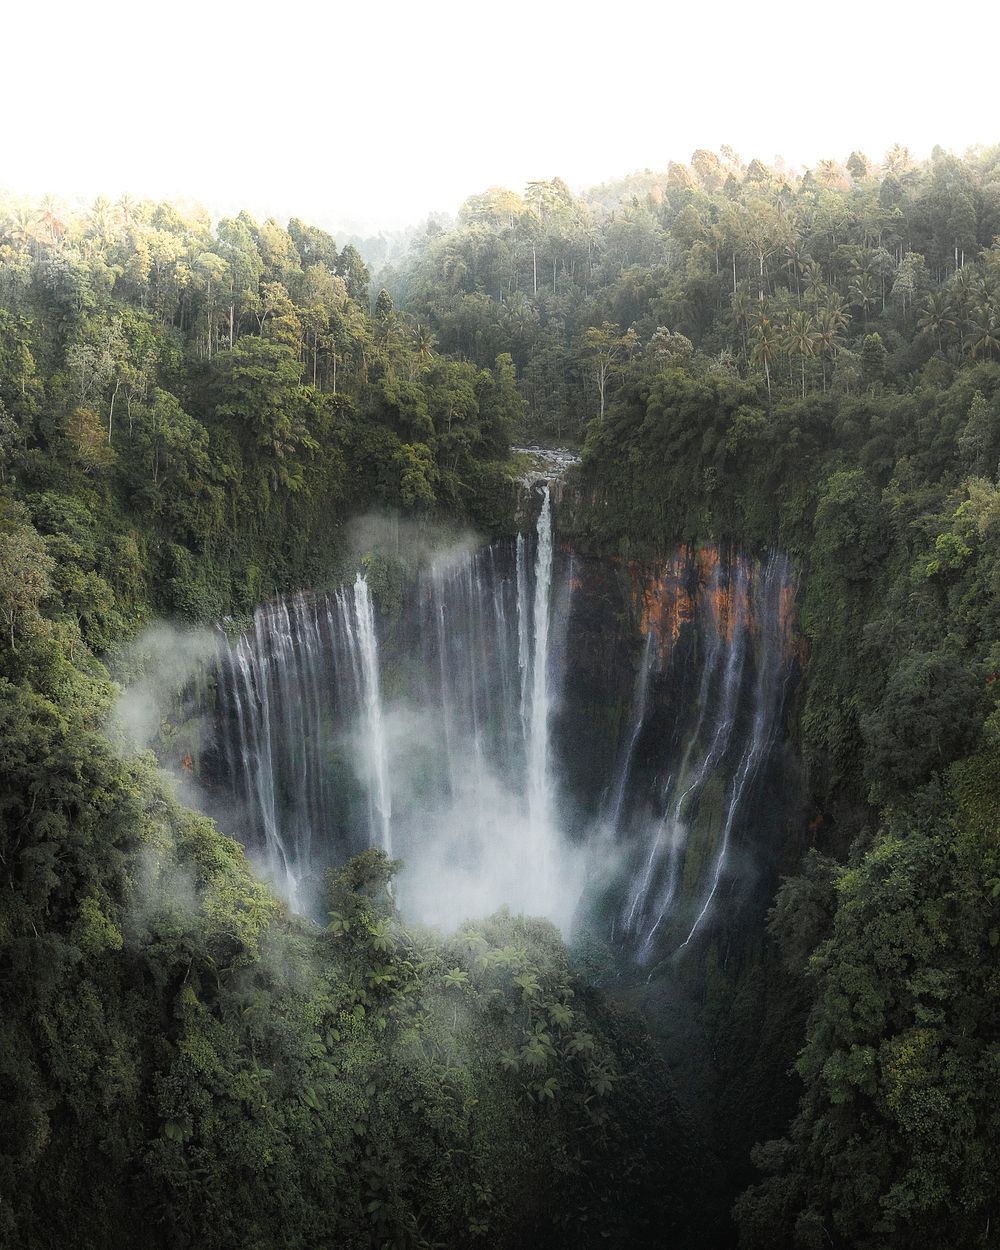 Beautiful Coban Sewu waterfall in Java, Indonesia